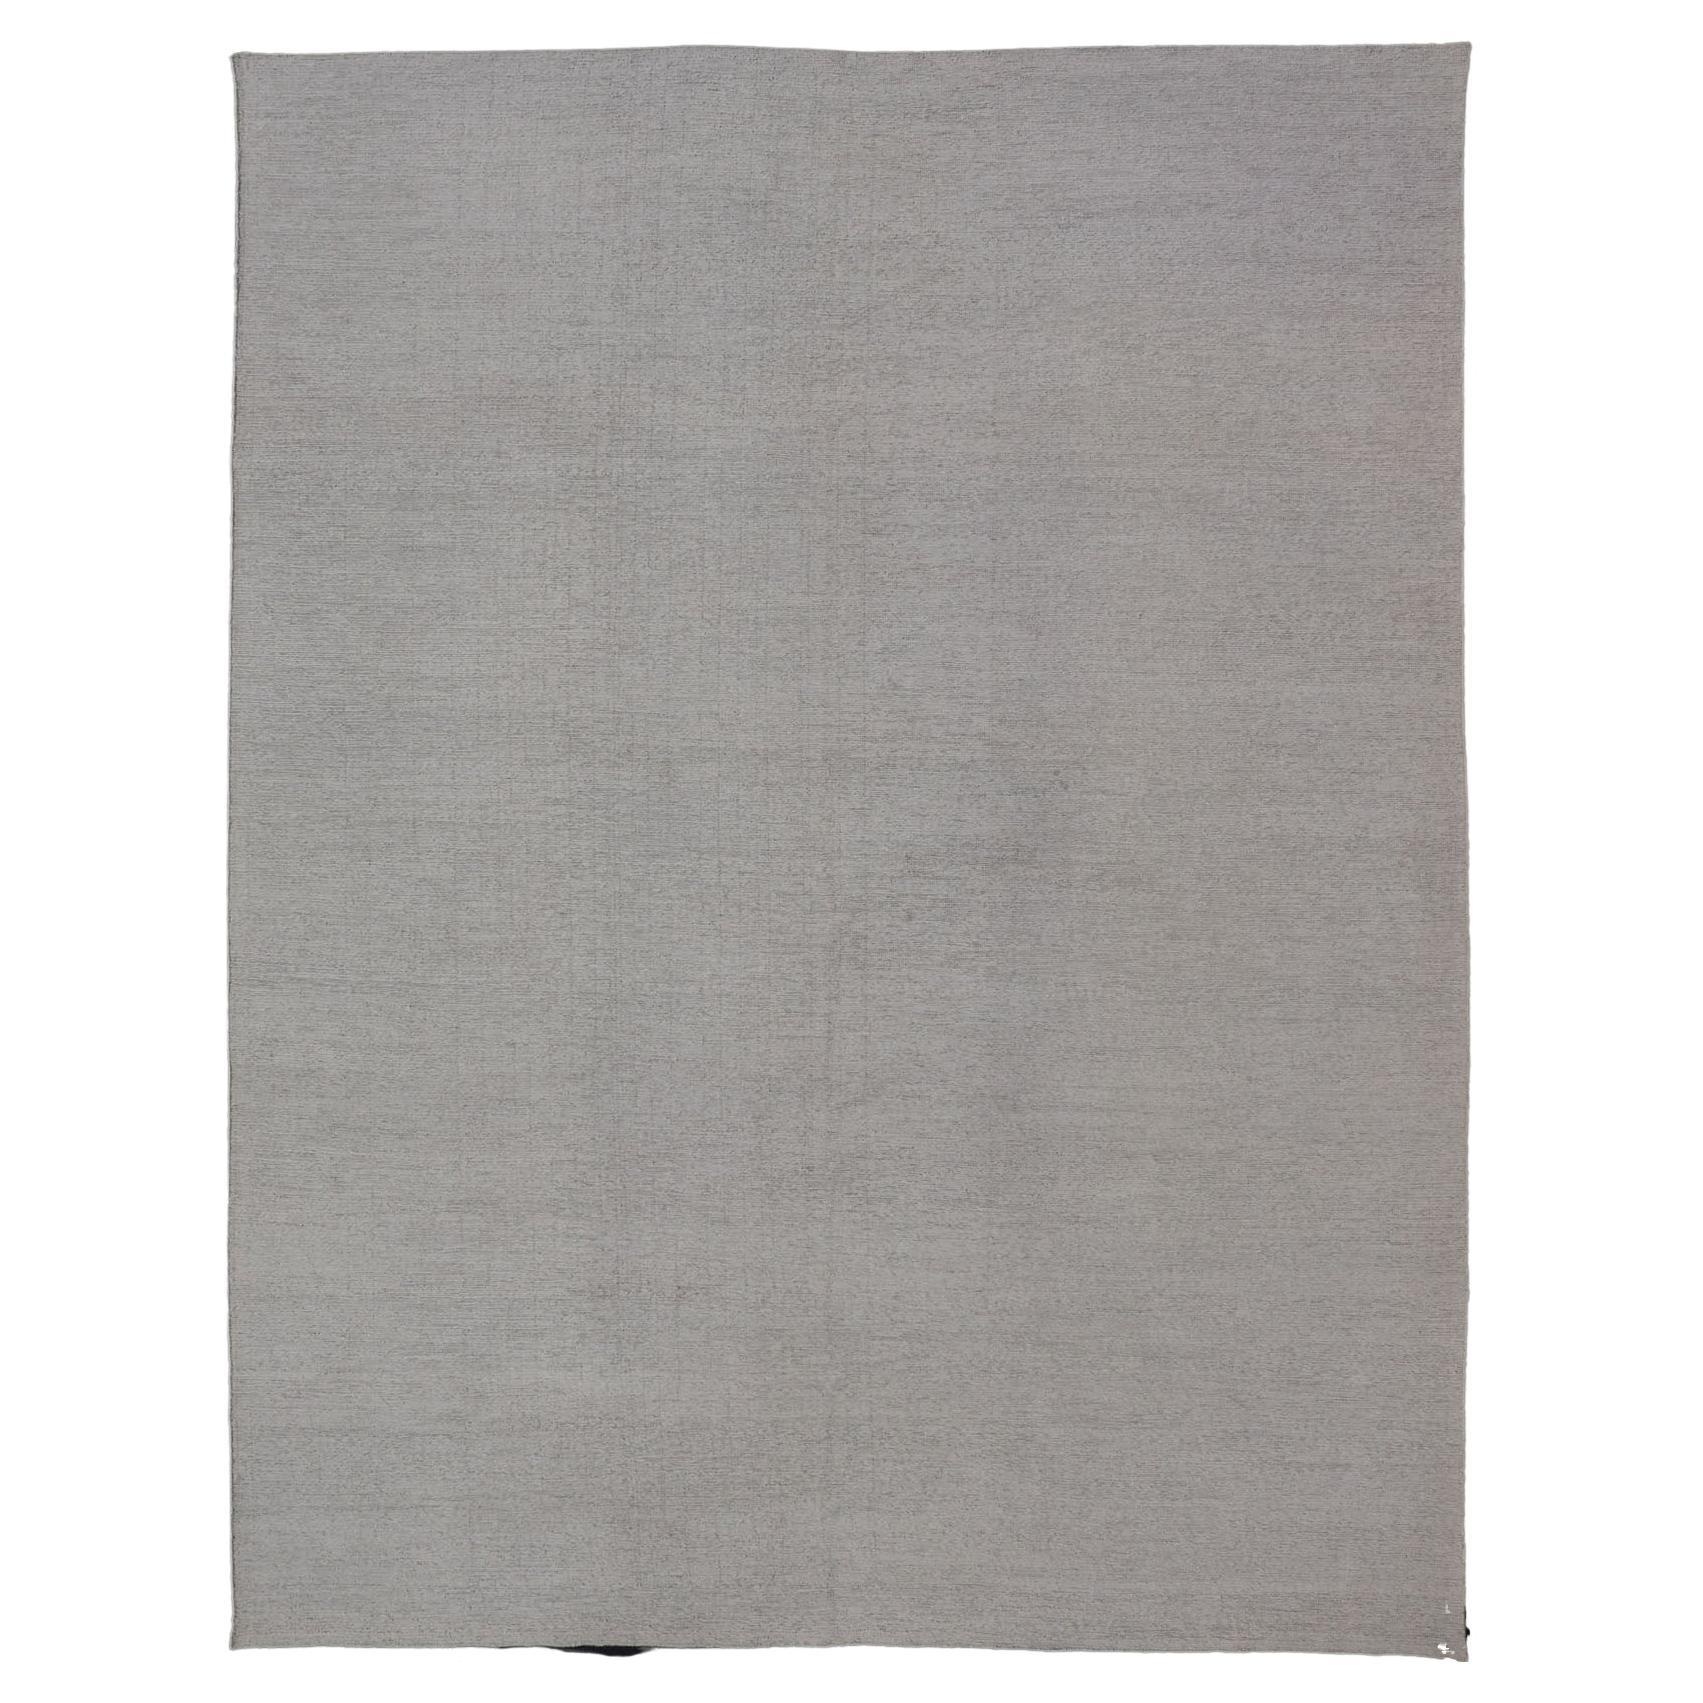 Grand tapis moderne épais à tissage plat réversible au design minimaliste avec motif kaki